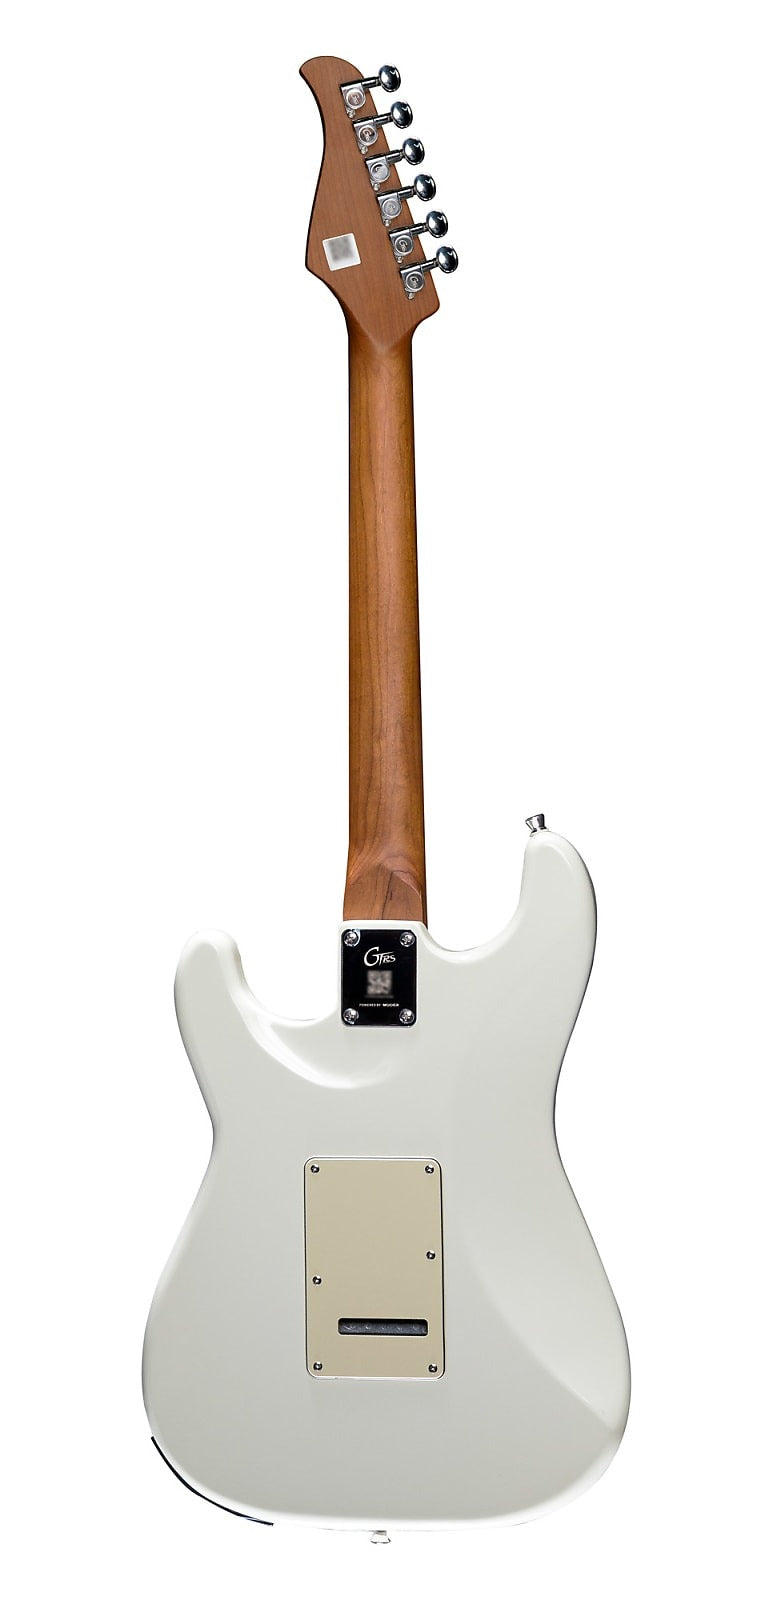 公式銀座Moore GTRS S801 White ギター